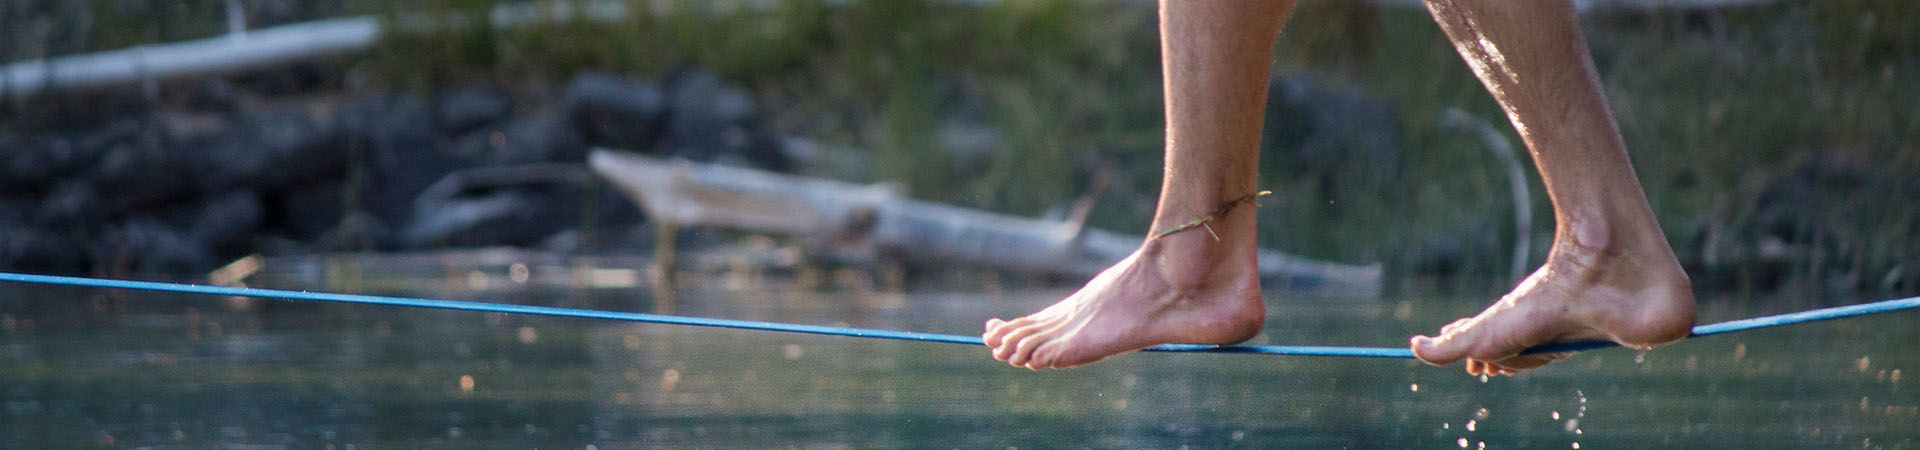 Slackline – Un uomo è in equilibrio su una waterline sospesa su un corso d’acqua.